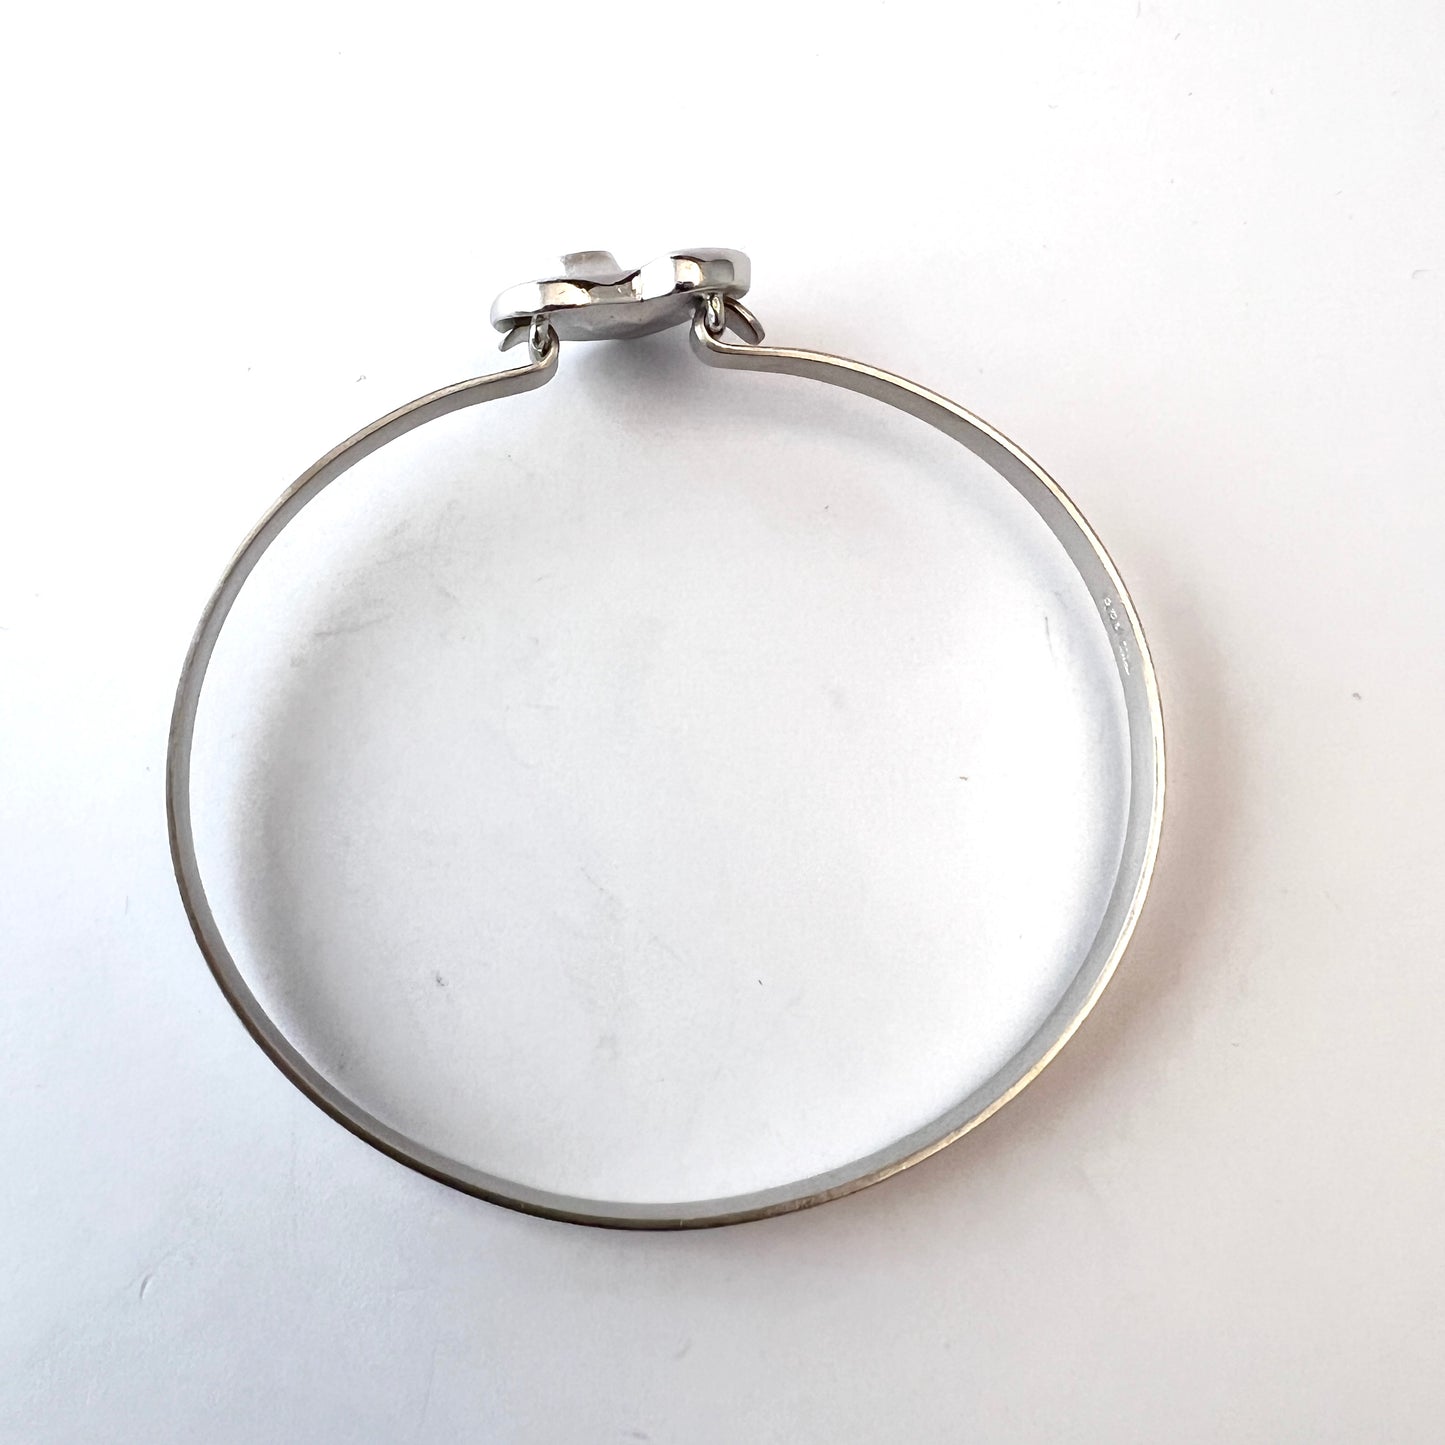 Finnfeelings, Finland Vintage Sterling Silver CZ Eye of the Soul Bangle Bracelet.